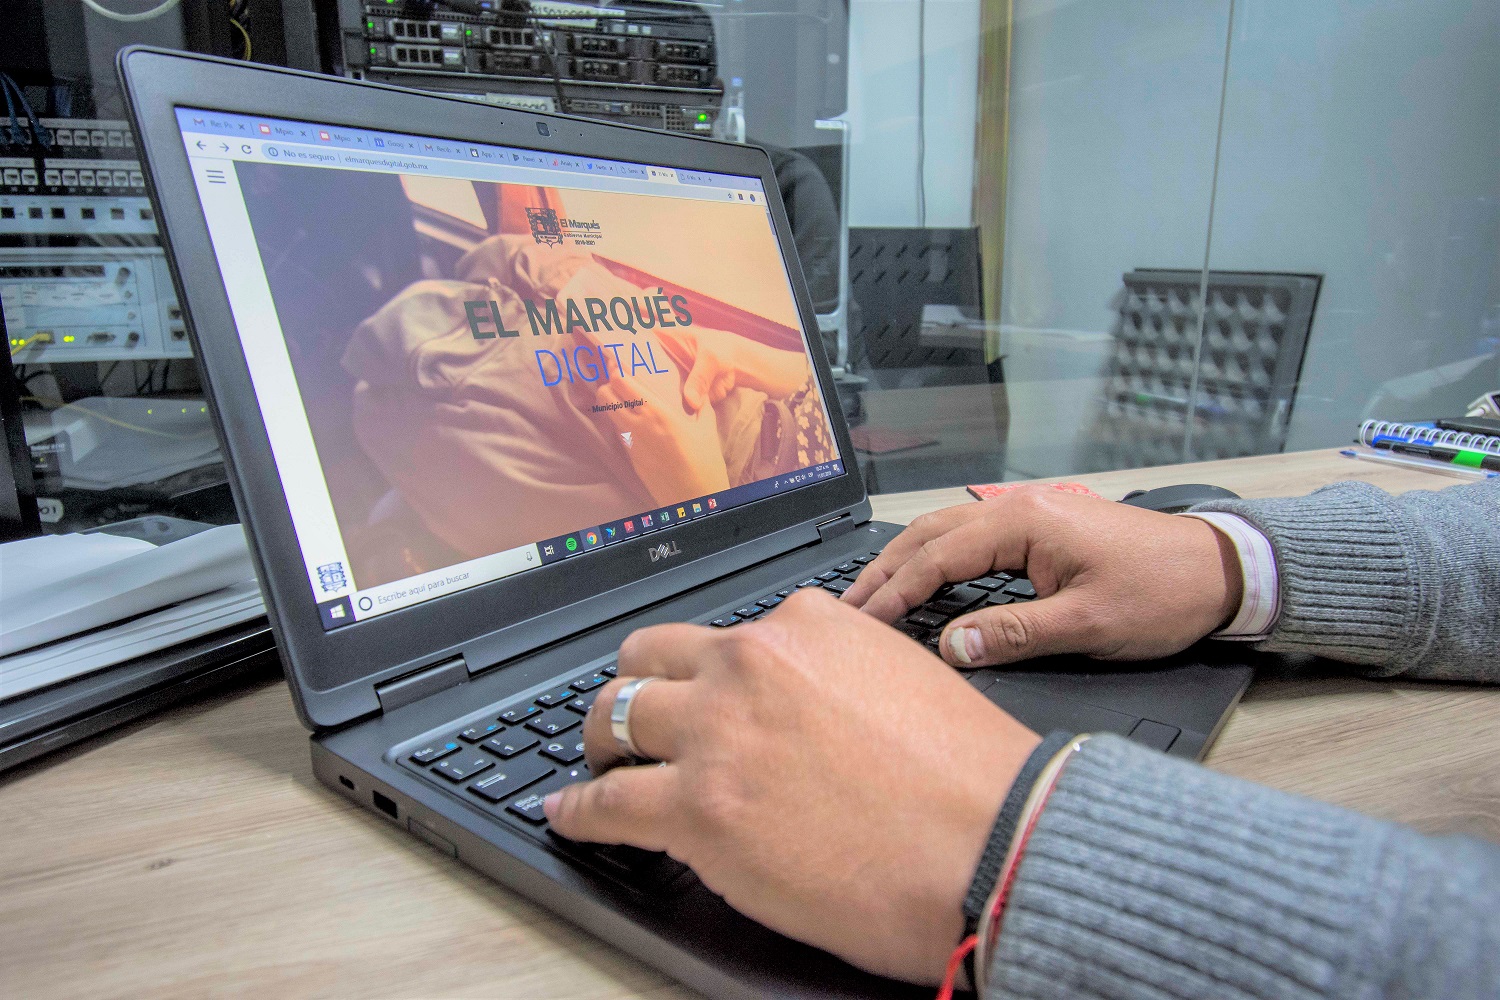 El Marqués ofrece aplicación móvil “El Marqués Digital” para mejorar sus servicios